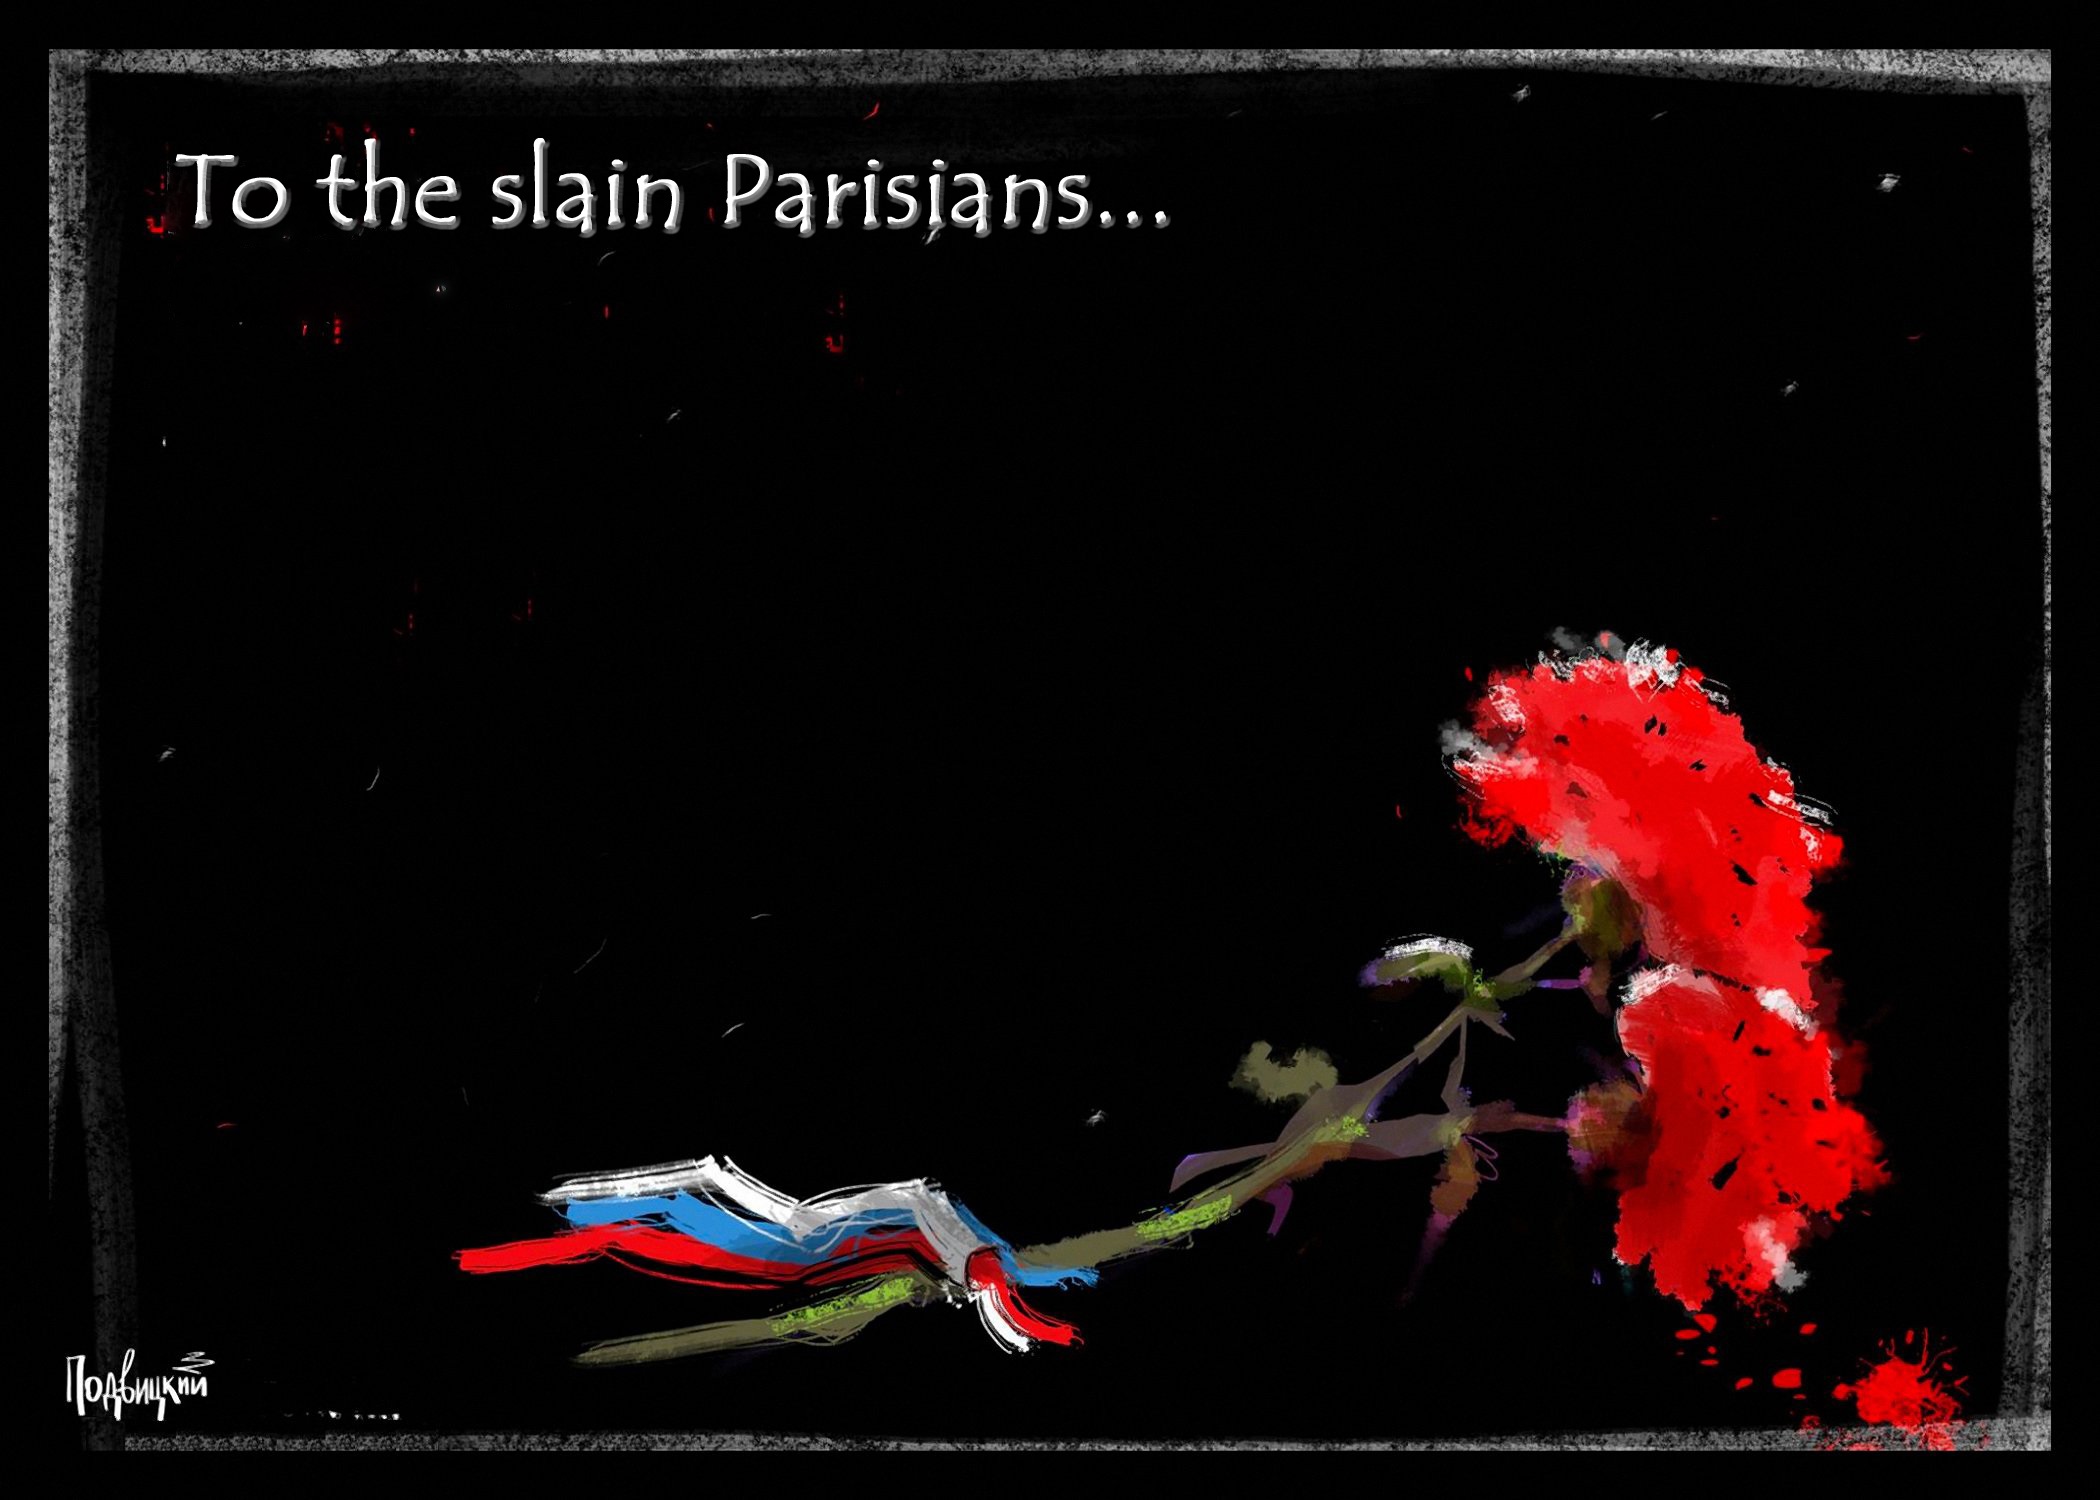 00 Vitaly Podvitsky. To the Slain Parisians. 2015